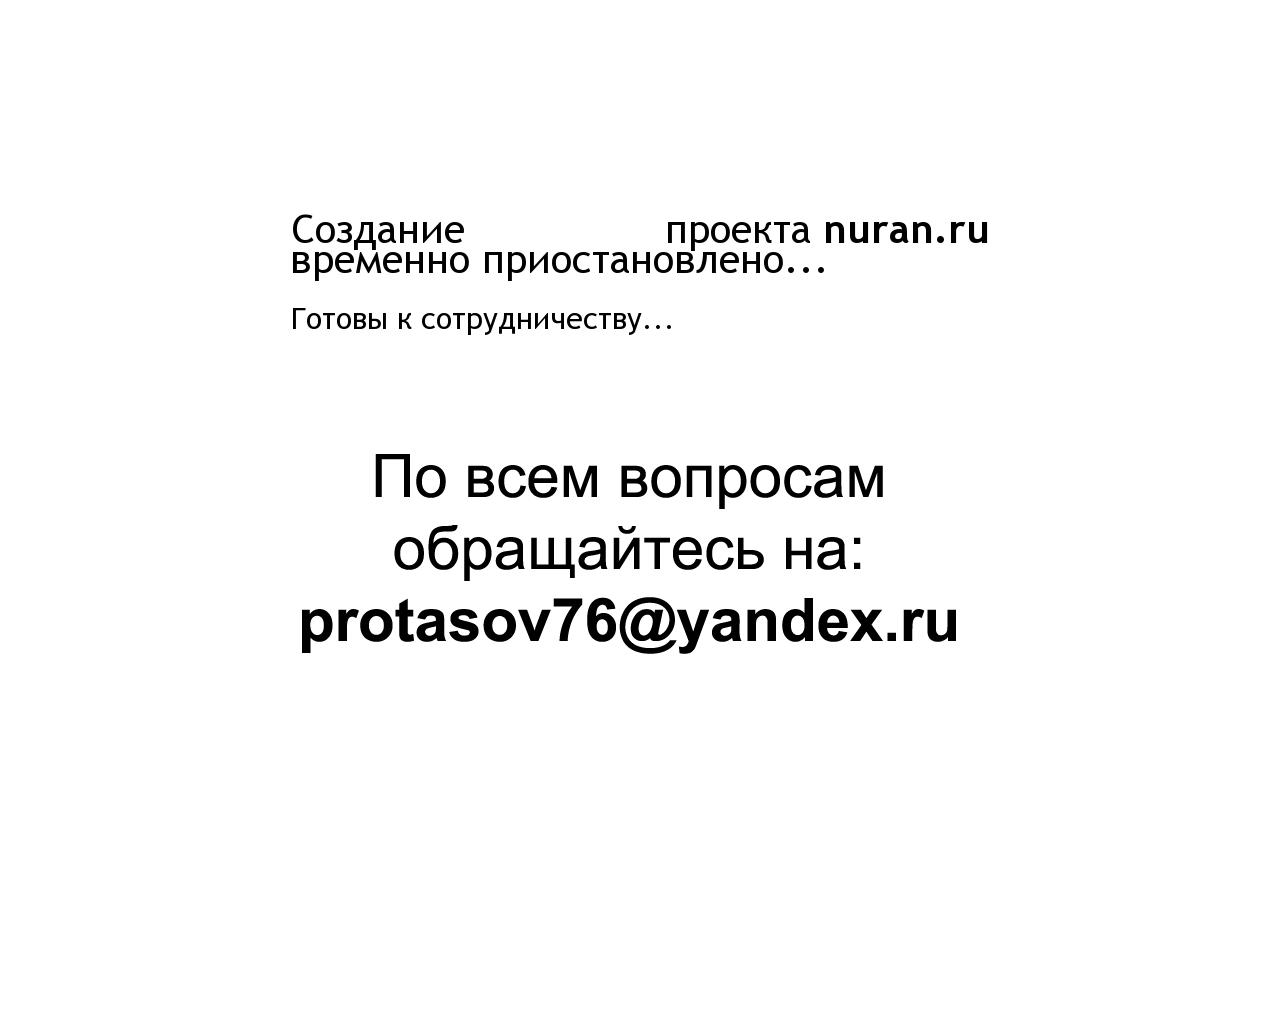 Изображение сайта nuran.ru в разрешении 1280x1024